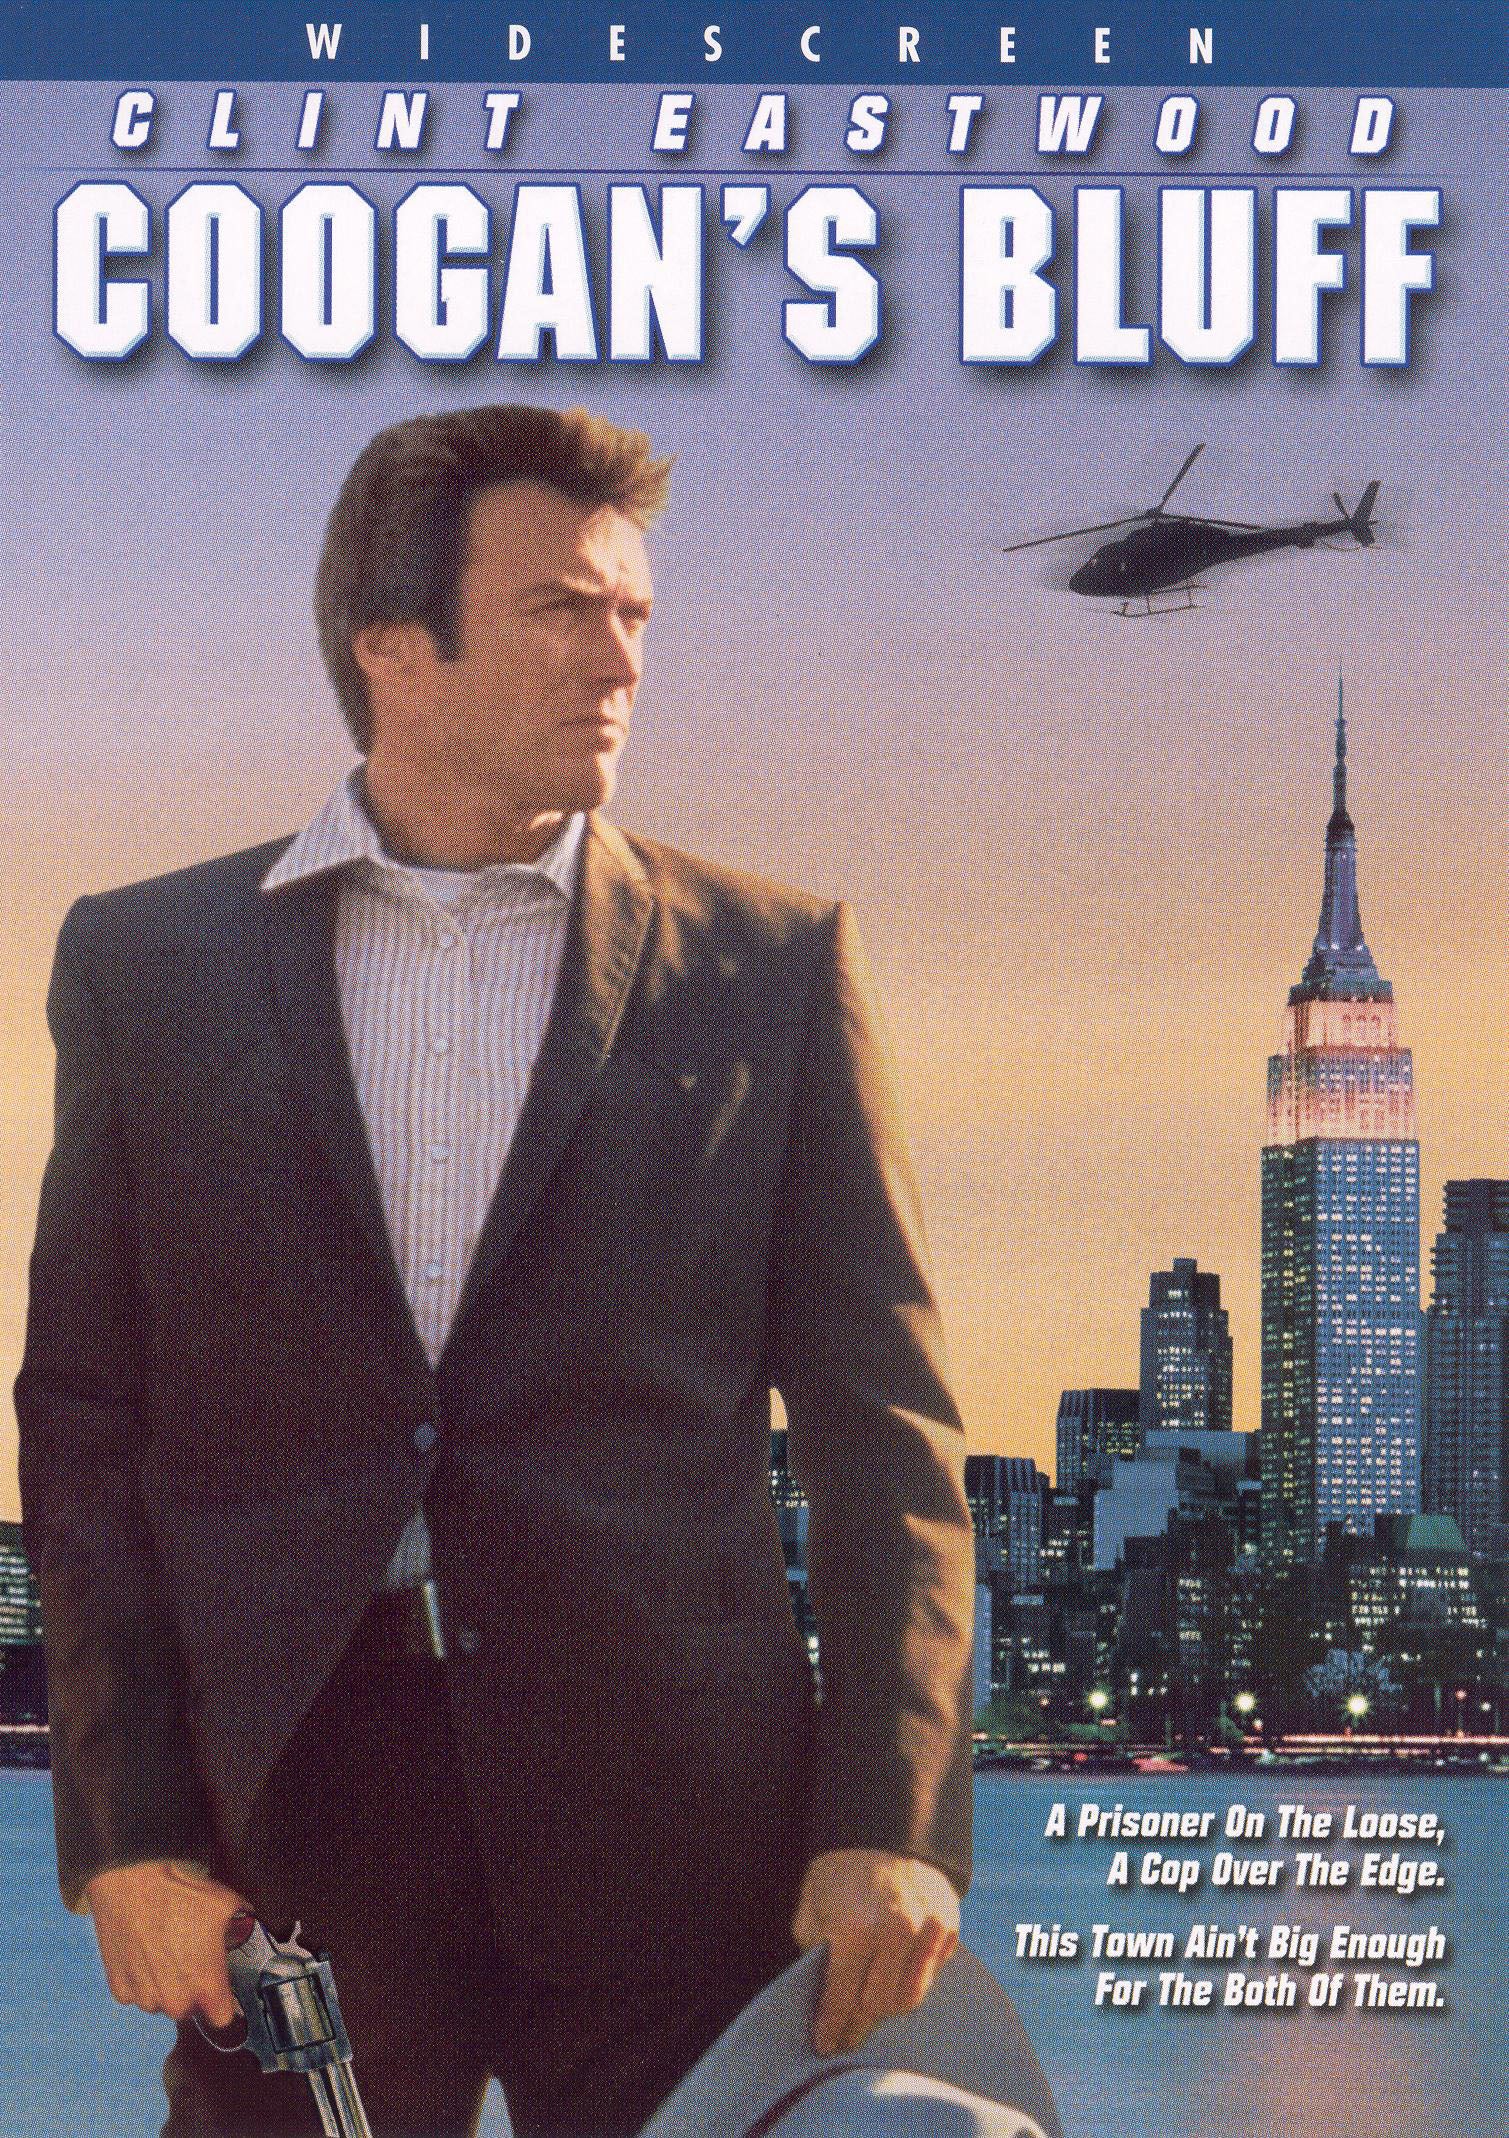 Coogan's Bluff cover art